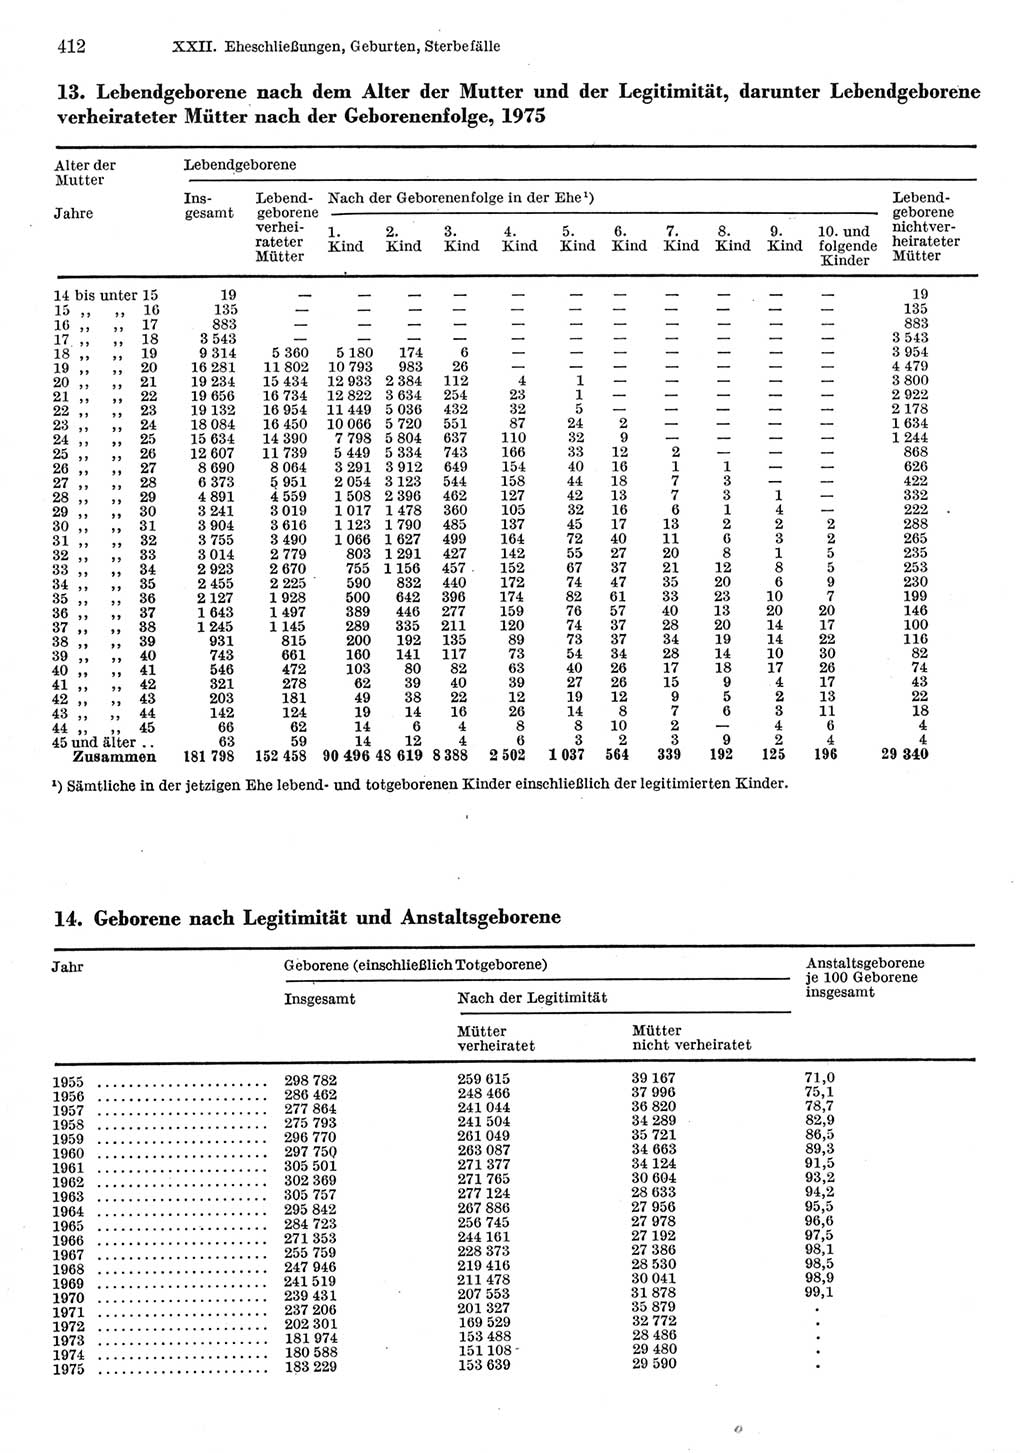 Statistisches Jahrbuch der Deutschen Demokratischen Republik (DDR) 1977, Seite 412 (Stat. Jb. DDR 1977, S. 412)